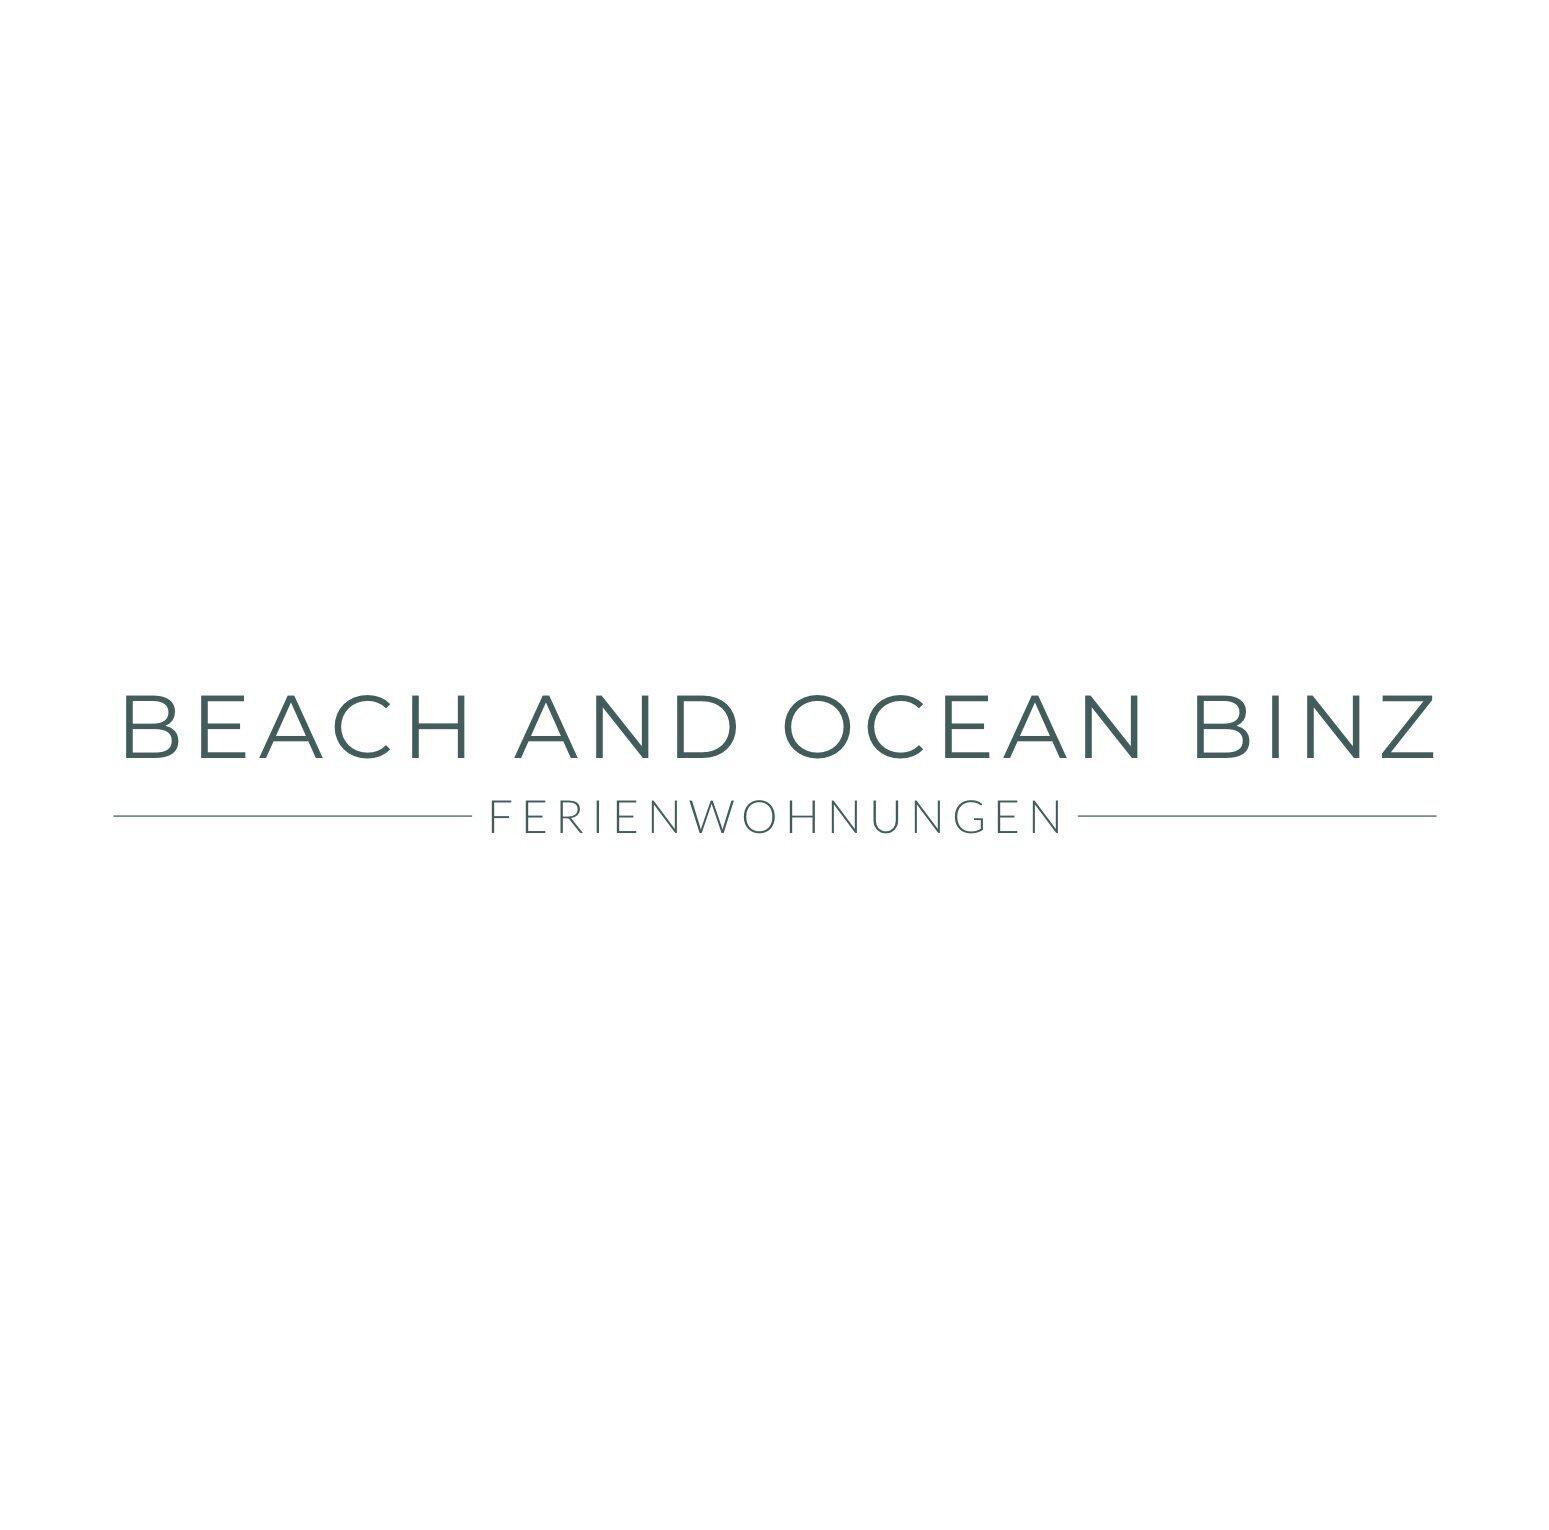 Bilder Beach and Ocean Binz - Ferienwohnungen Villa Chloe, Villa Vesta, Villa Helene, Villa Agnes, Villa Ambienta, Binzer Sterne